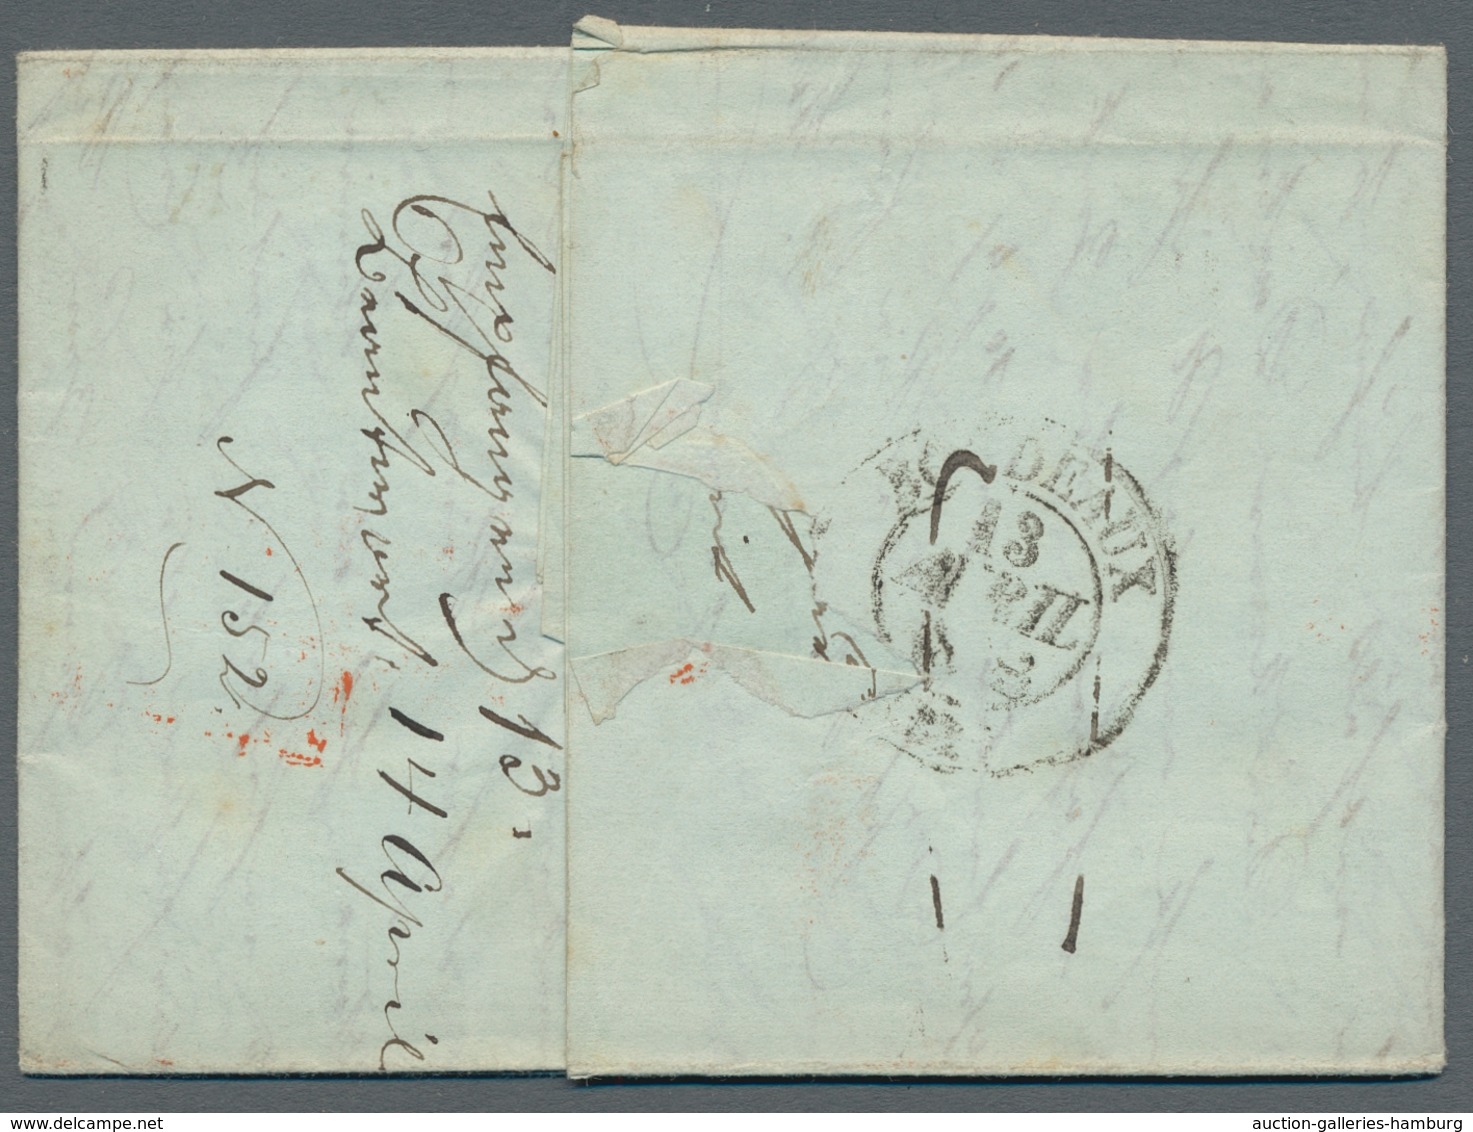 Hamburg - Marken und Briefe: 1821-1865, Partie mit 5 Vorphilabriefen, davon 2 vom Thurn und Taxische